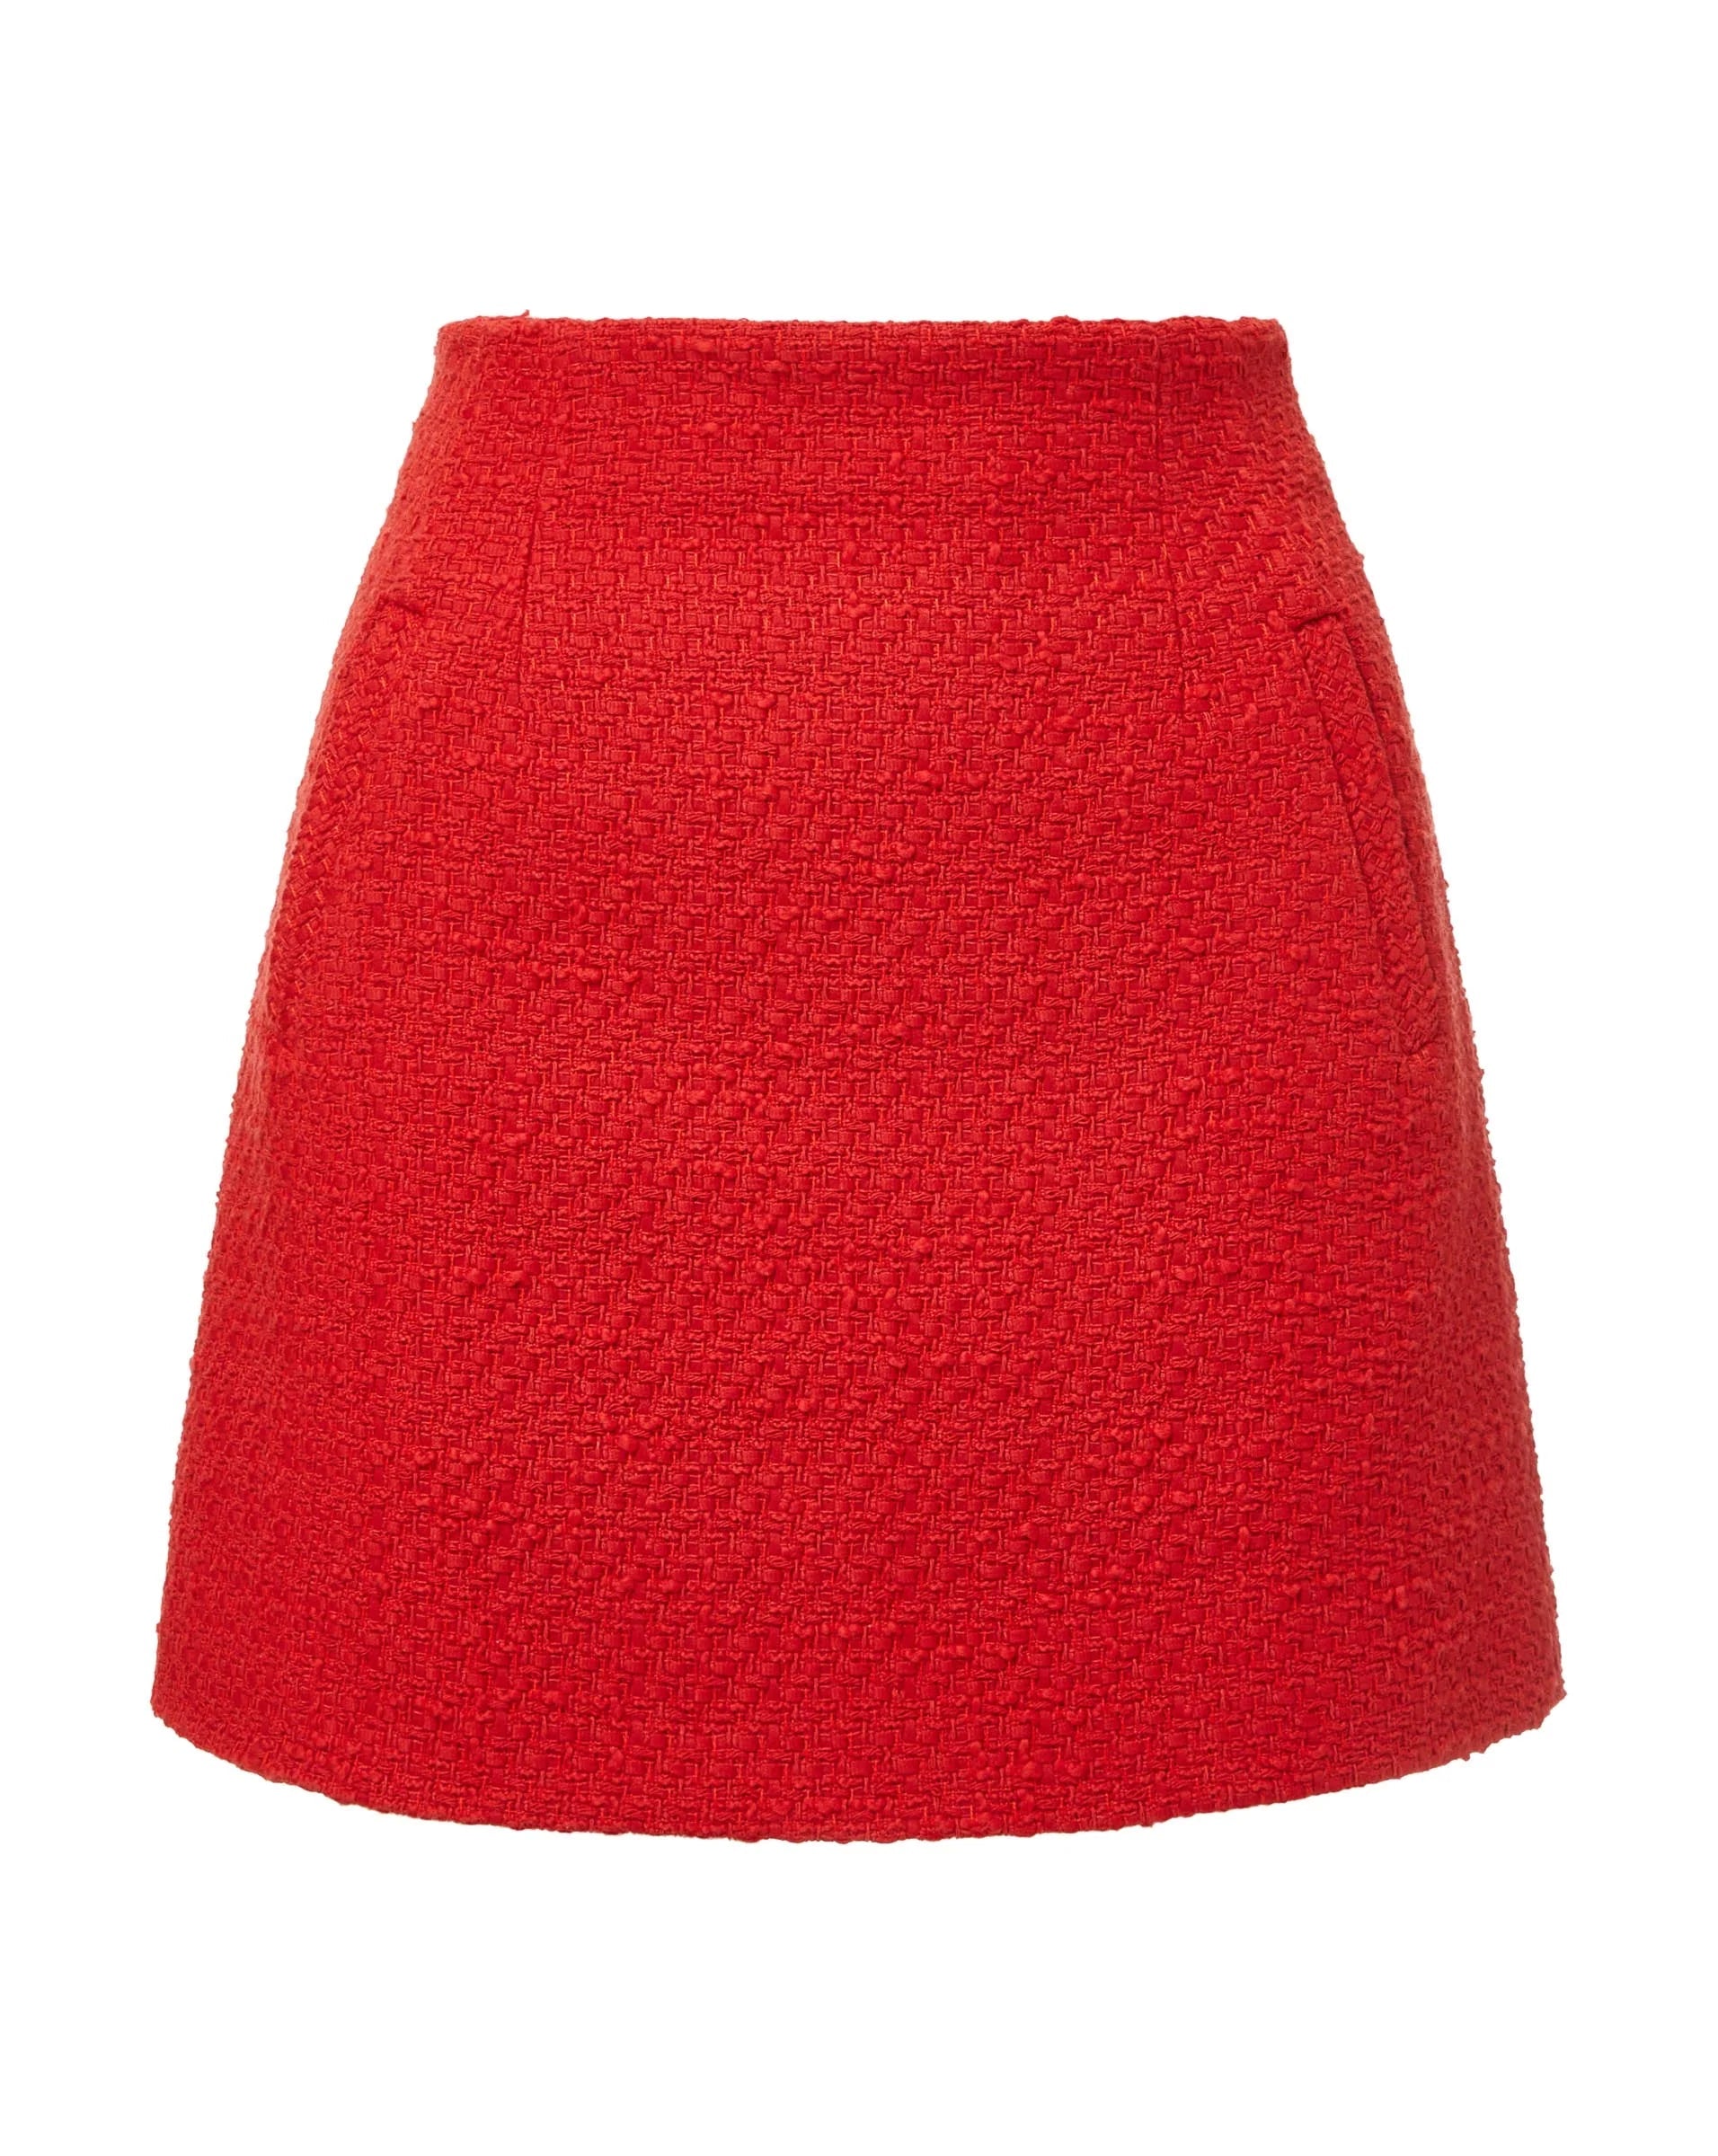 Roman skirt - nantucket red Skirts & Shorts VERONICA BEARD